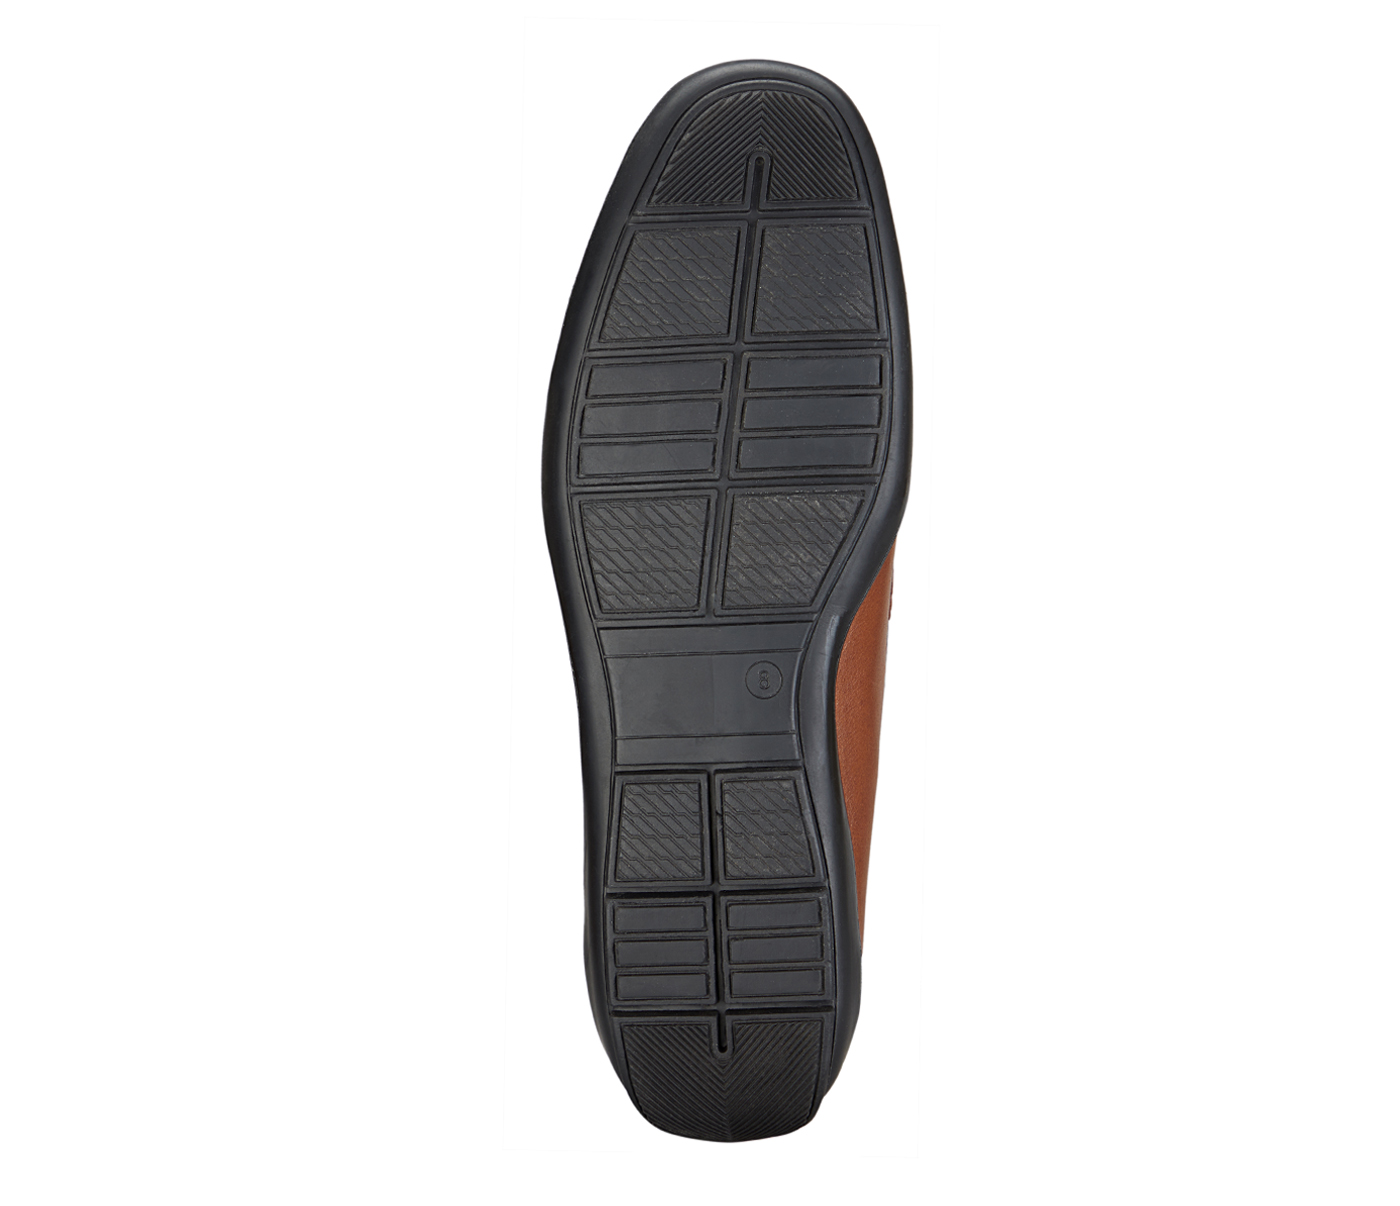 PF44-Adamis Pure Leather Footwear For Men- - Tan/Brown